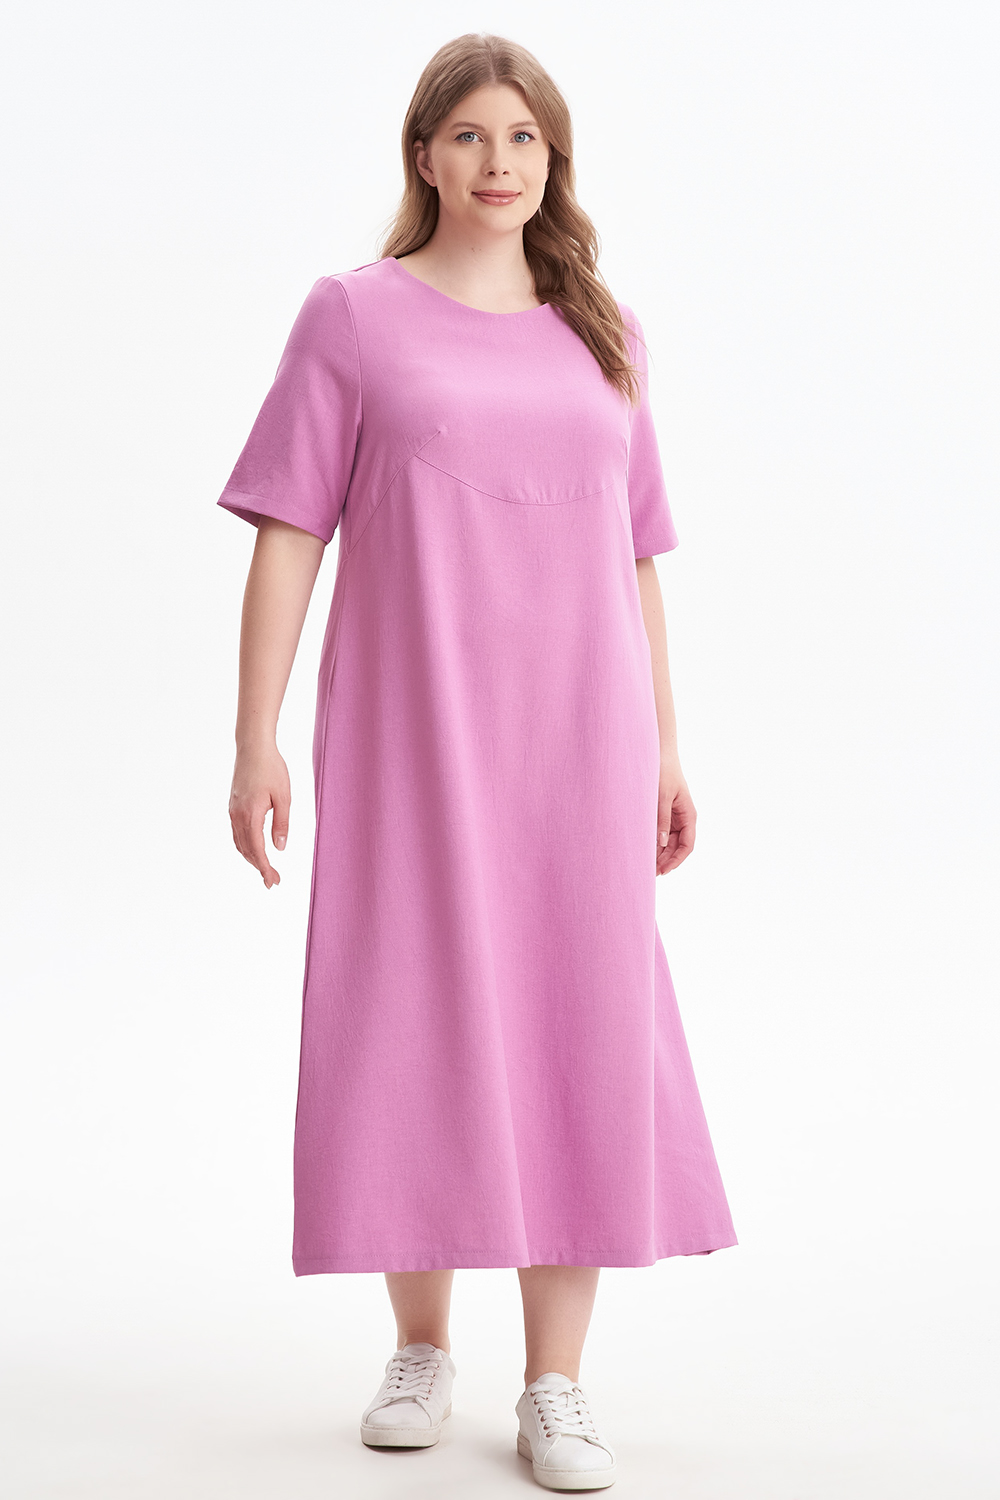 Платье женское OLSI 2305012 розовое 70 RU